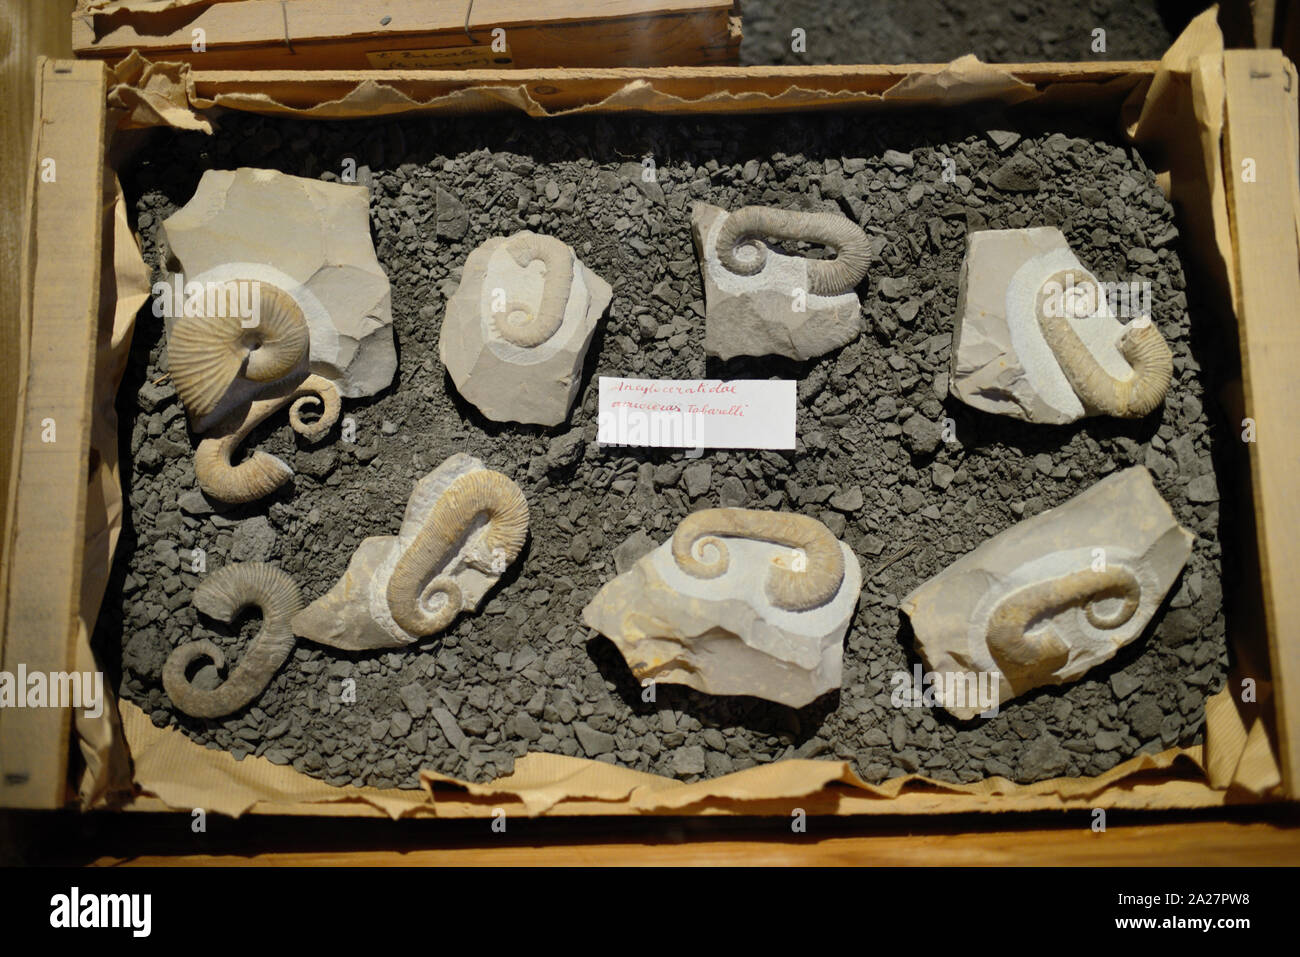 Holzkiste oder Sammlung von Ancyloceras Ammoniten, eine ausgestorbene Gattung der Heteromorph Ammoniten von Gedehnt Shell gekennzeichnet Stockfoto